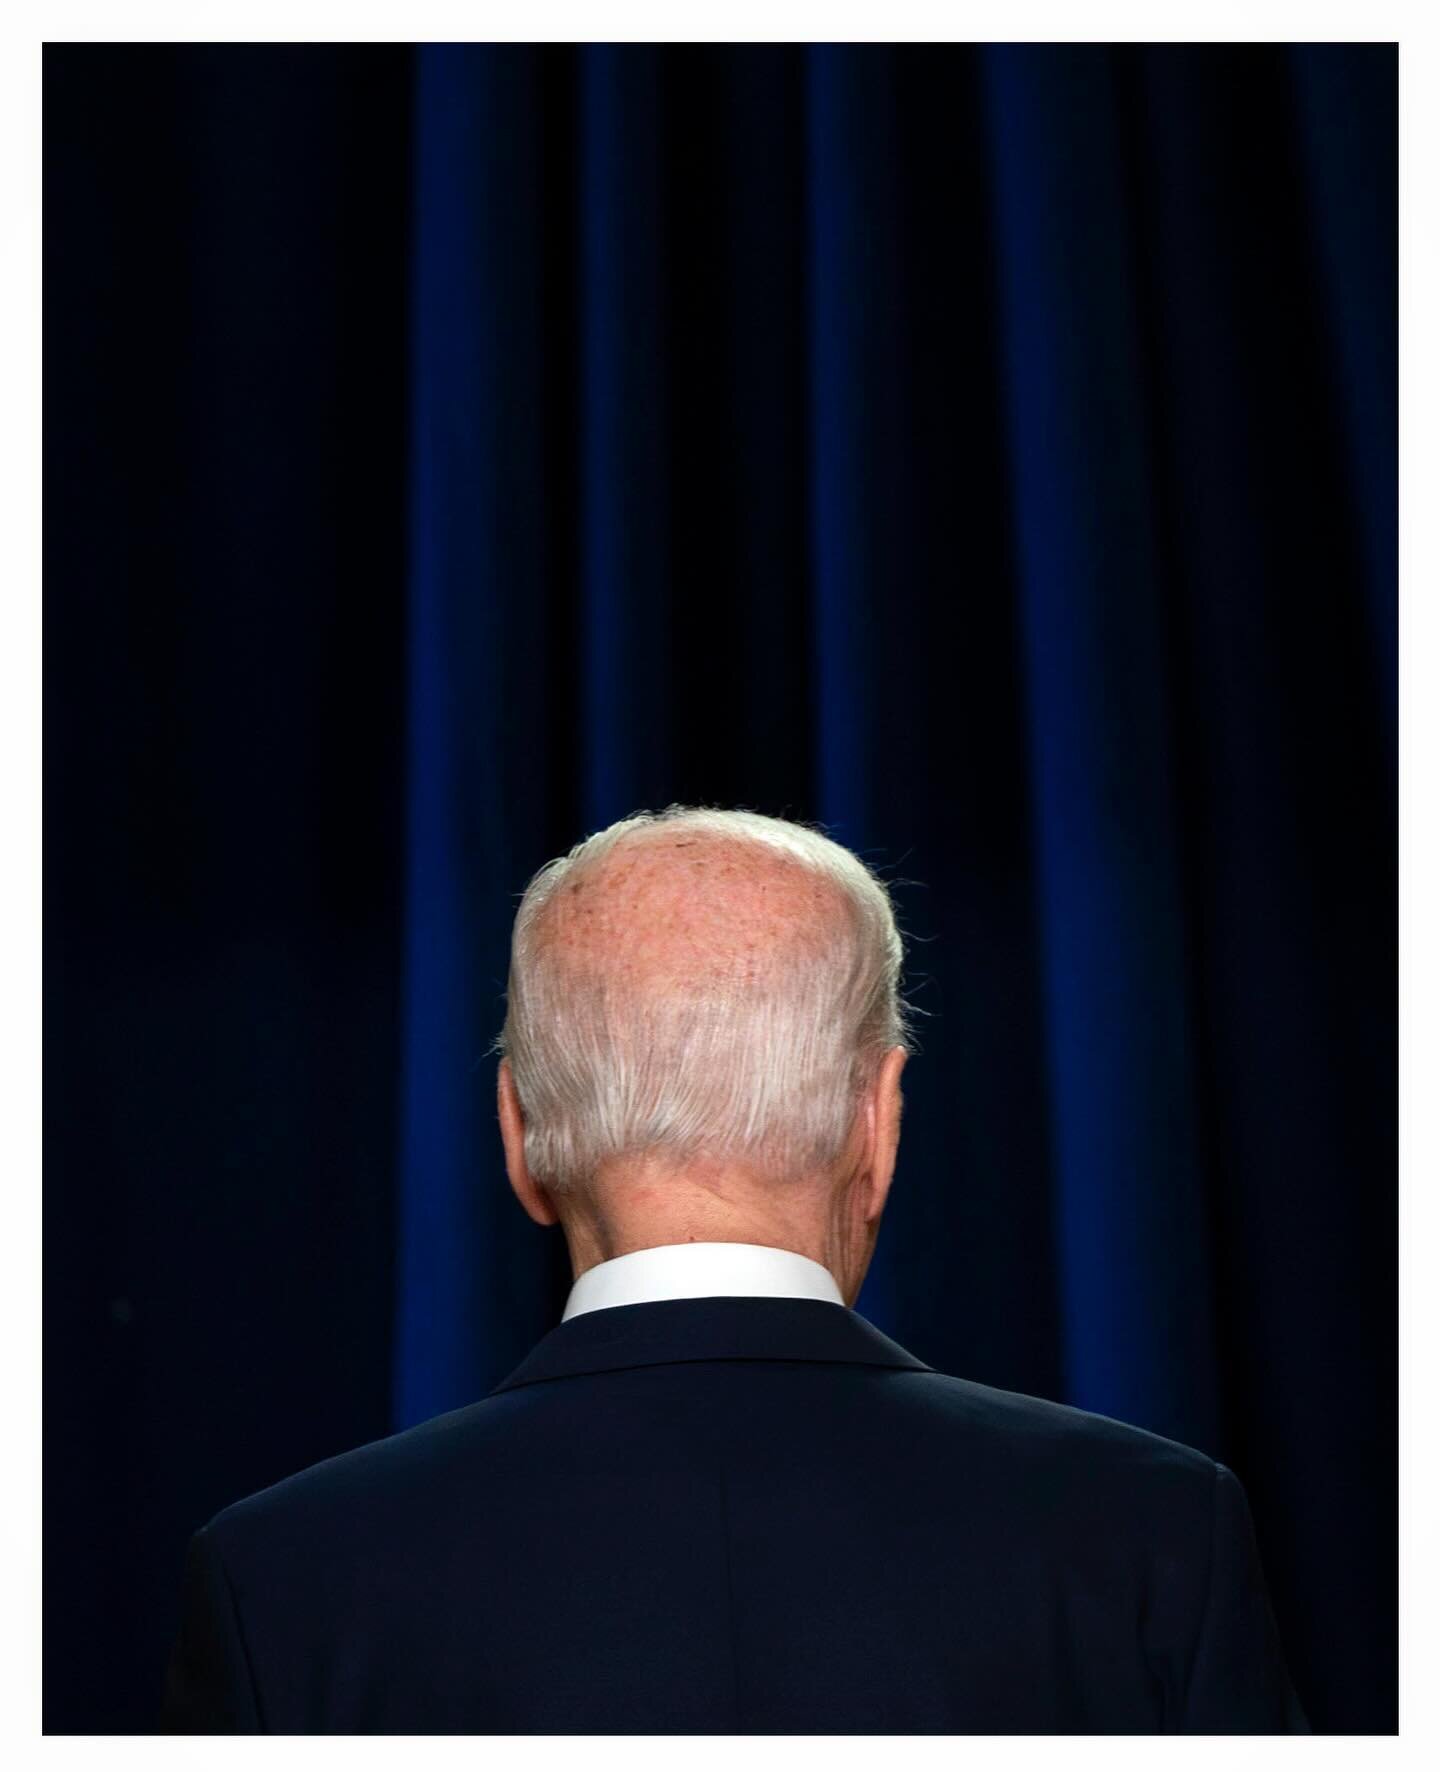 President Biden leaves the Indian Treaty Room. @upi